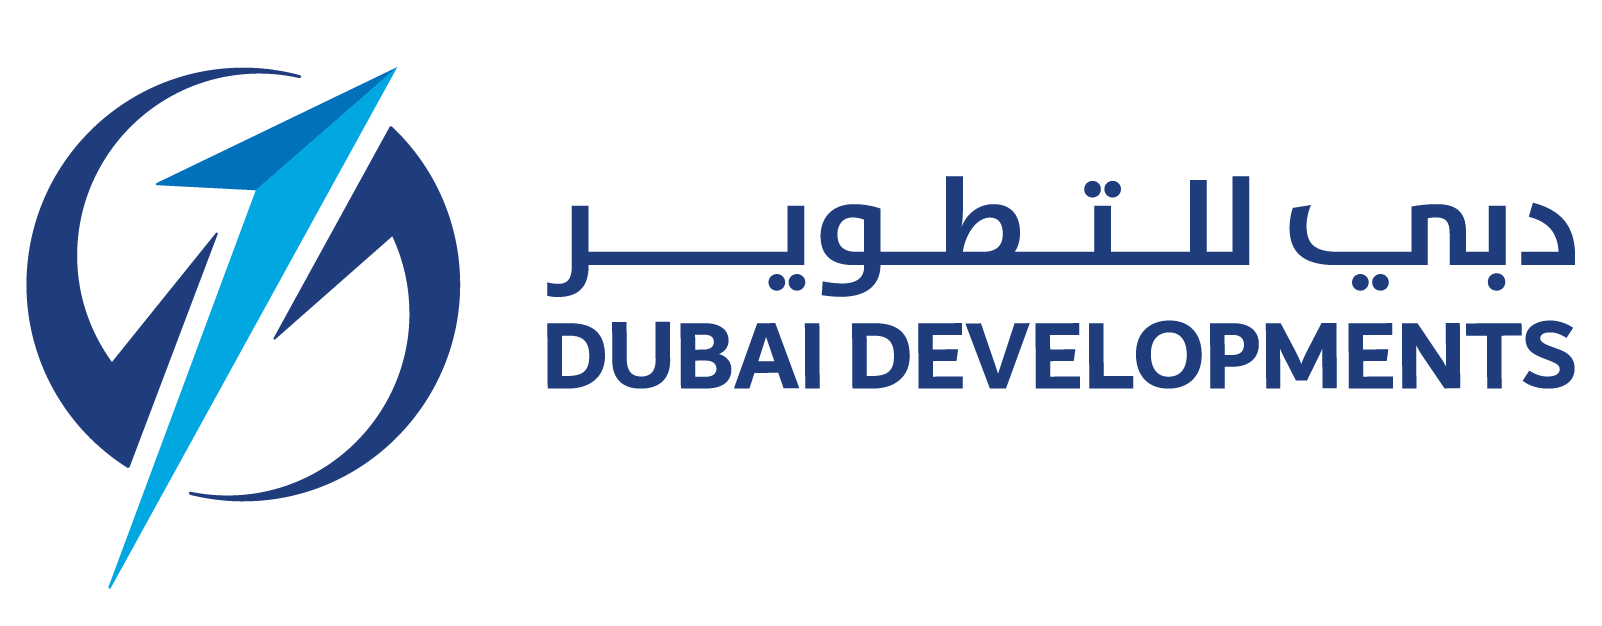 dubai developments logo